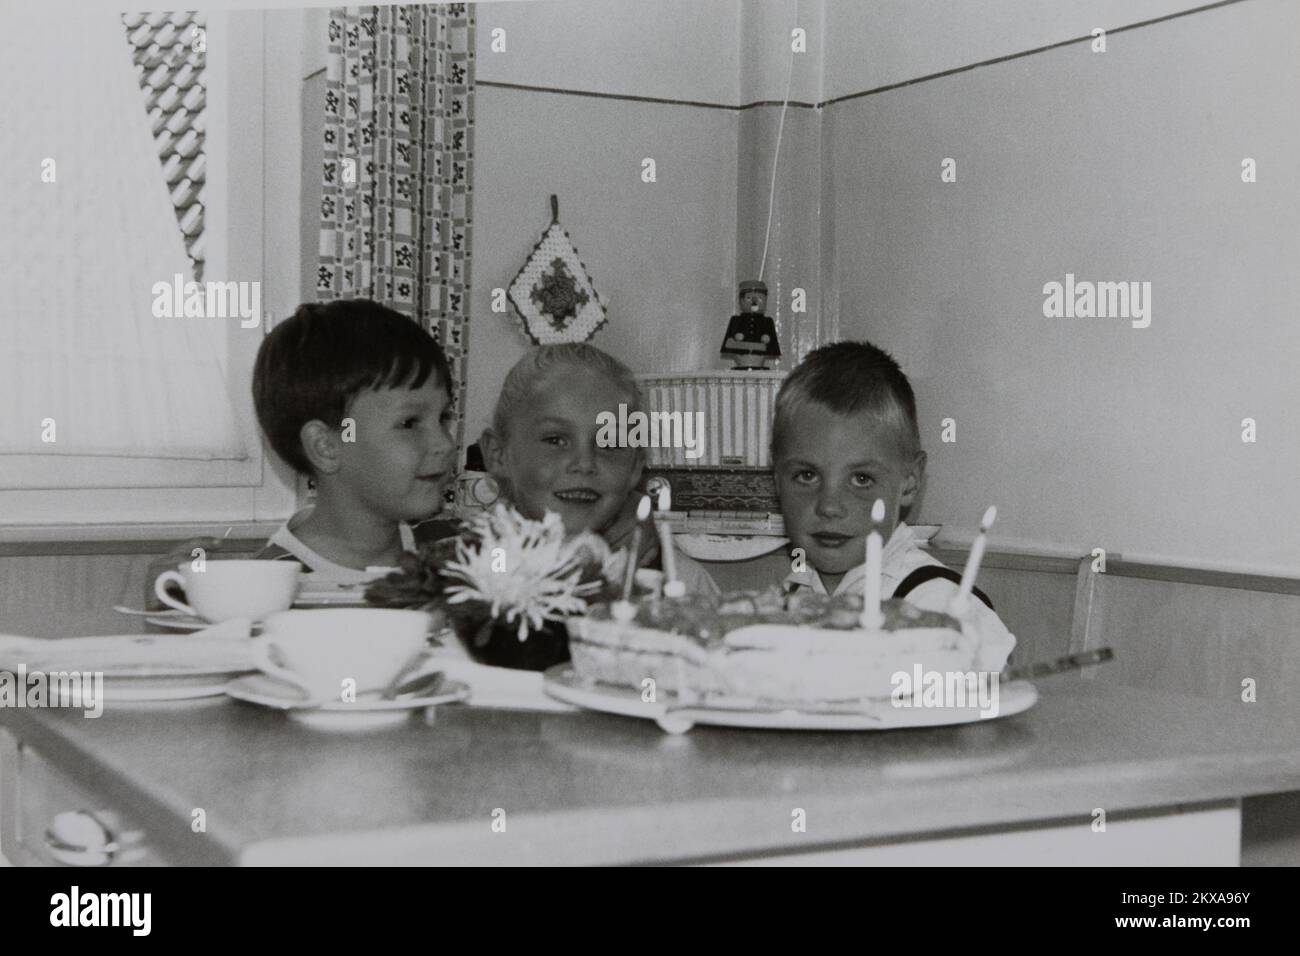 08/25/1962, 7720 Schwenningen, Germania. Immagine storica di una festa di compleanno per bambini nel 1962. Foto Stock